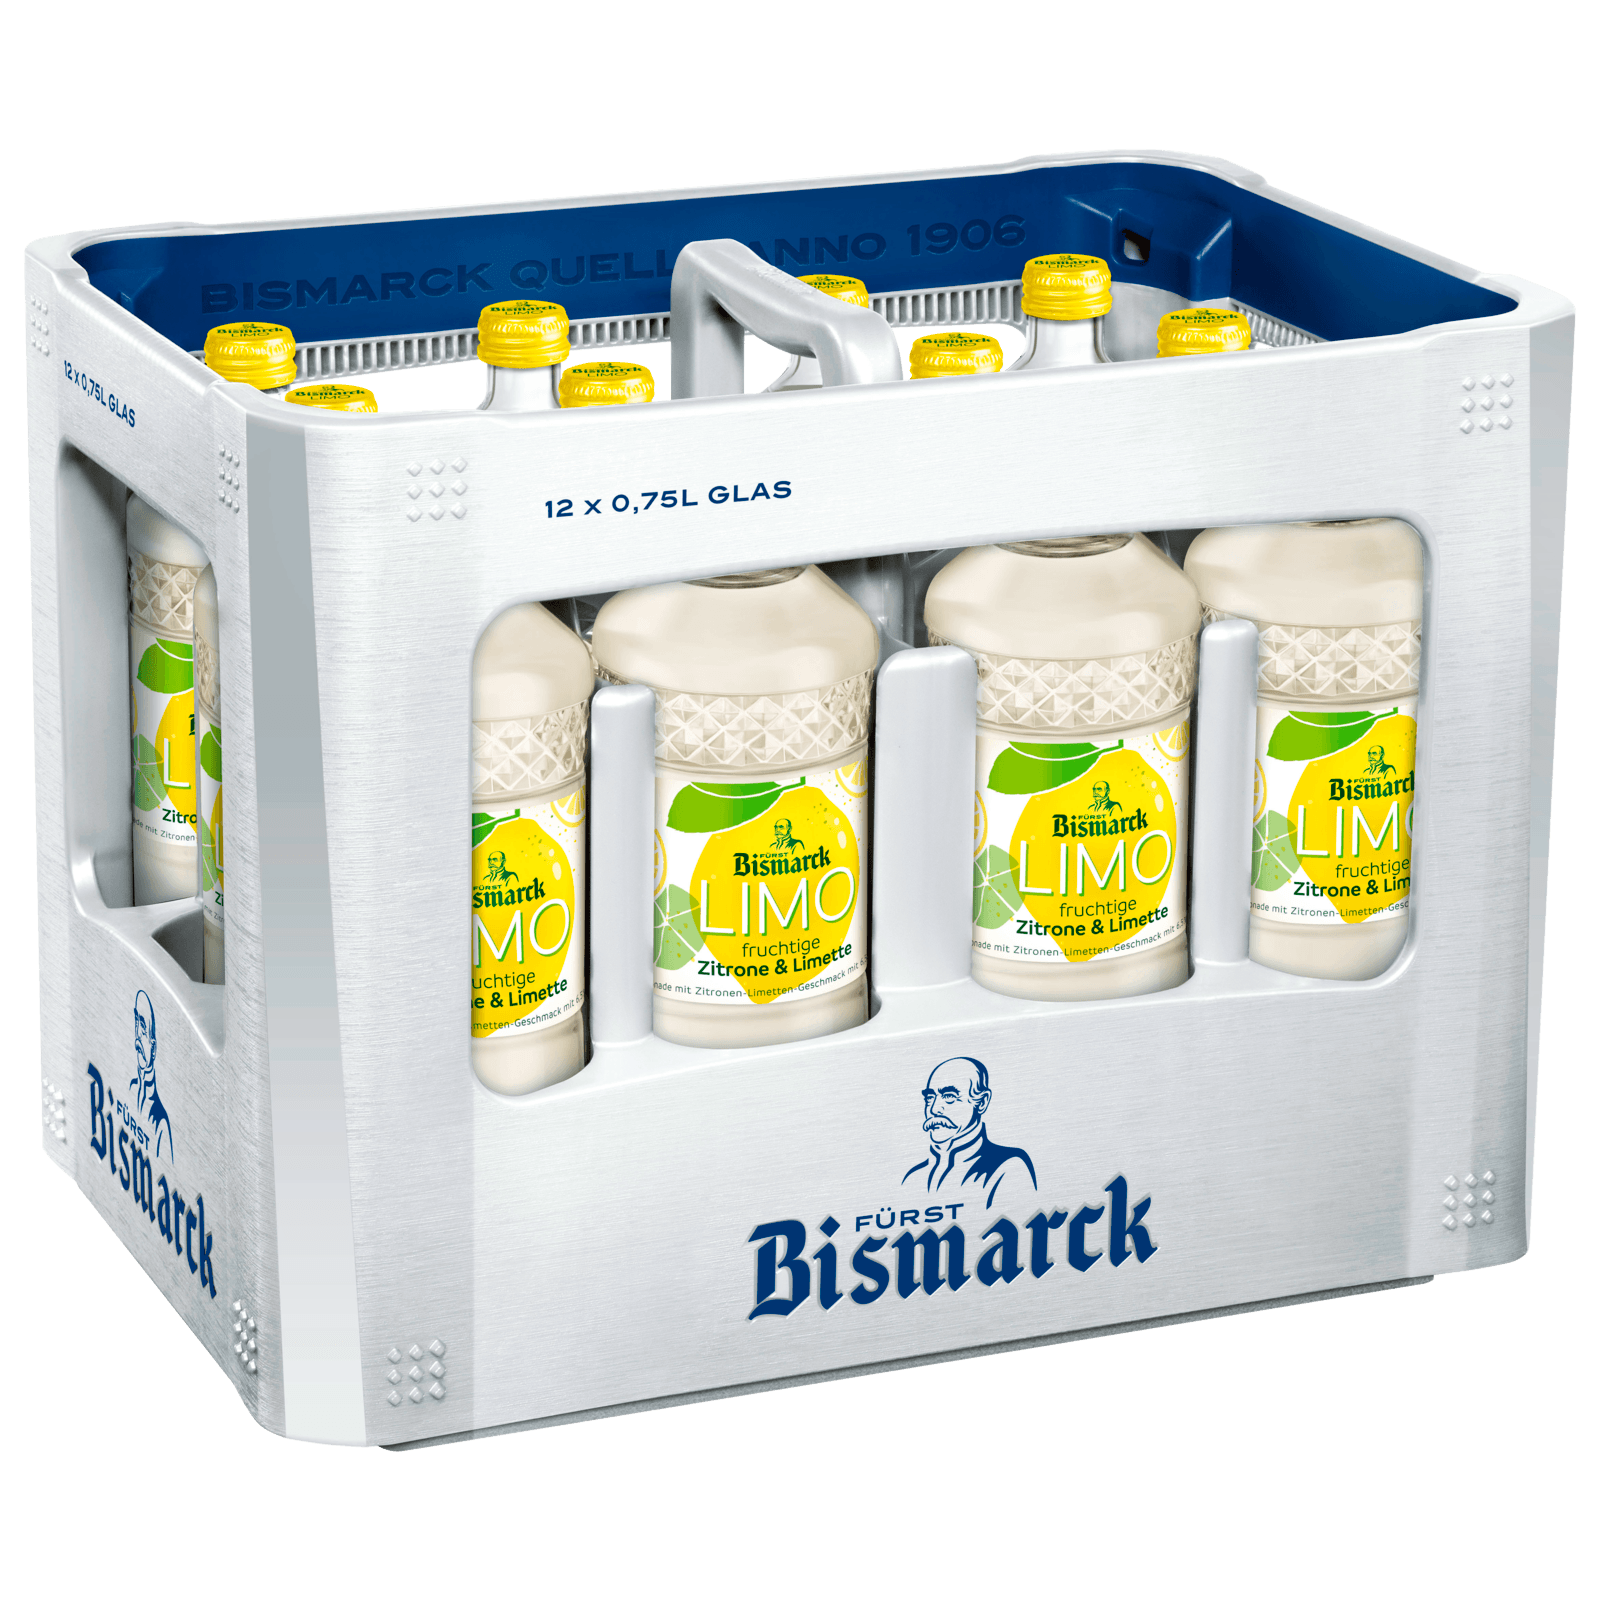 Fürst Bismarck Limo REWE online bei & Limette Zitrone 12x0,75l bestellen